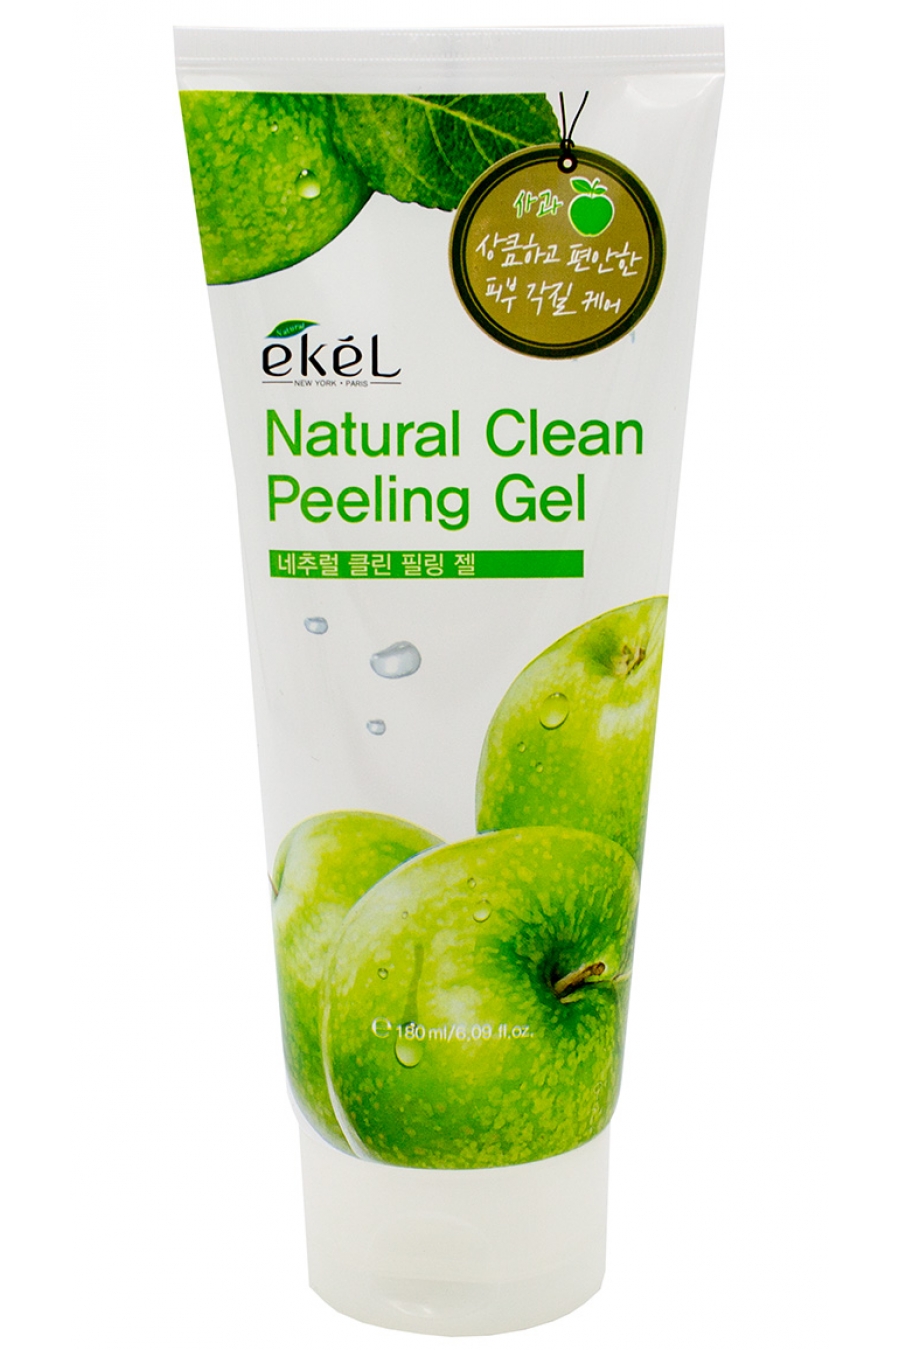 Apple gel. Apple natural clean peeling Gel 180 ml. Ekel natural clean peeling Gel Apple. Пилинг Ekel яблоко 180мл. Ekel пилинг скатка яблоко.